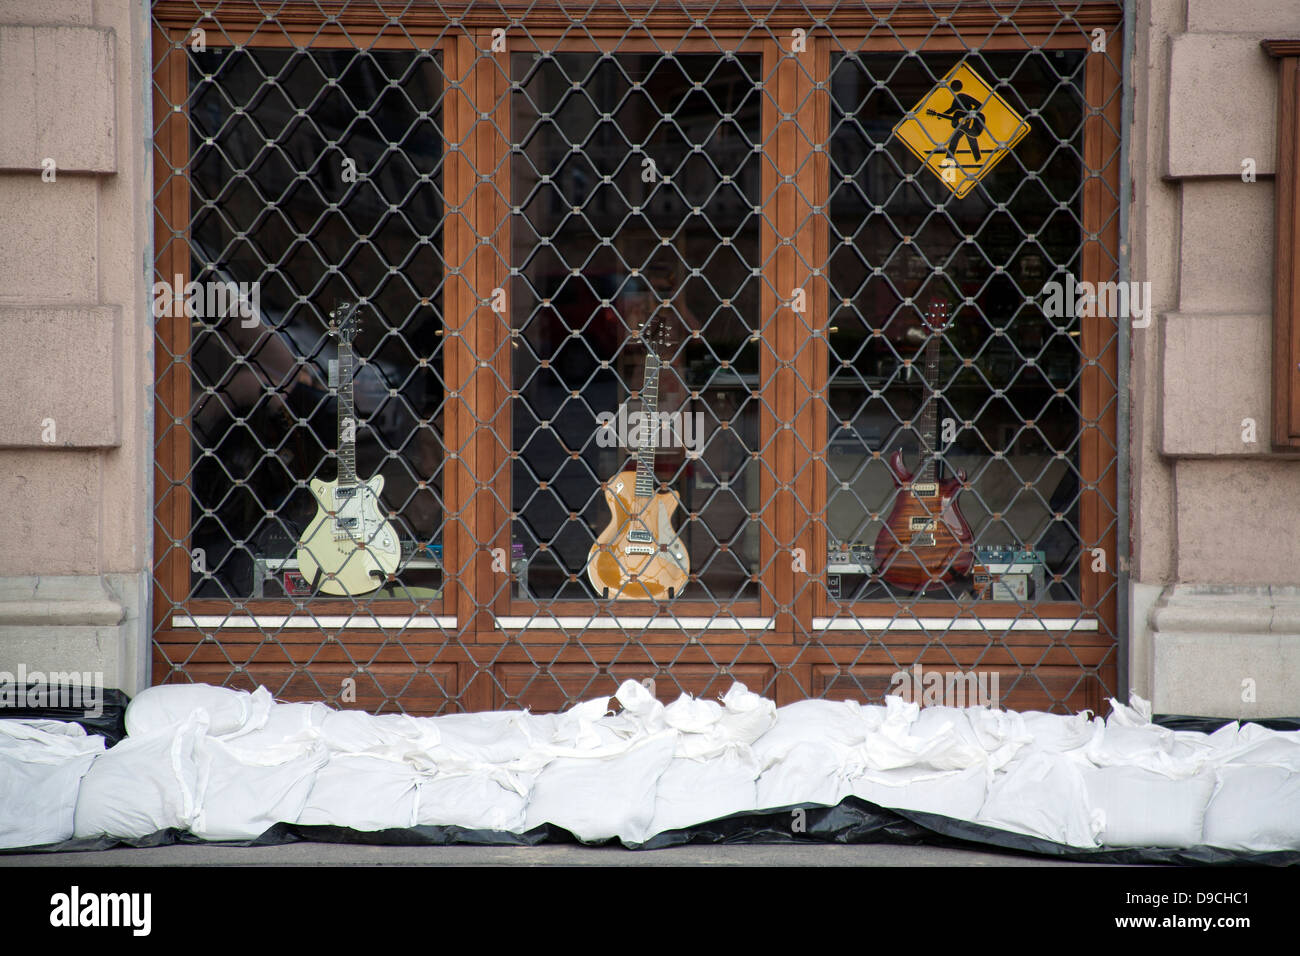 Doublure de sacs de sable le mur d'un magasin de musique avec des guitares  dans la fenêtre pour protéger de l'inondation Danube, Budapest, Hongrie  Photo Stock - Alamy